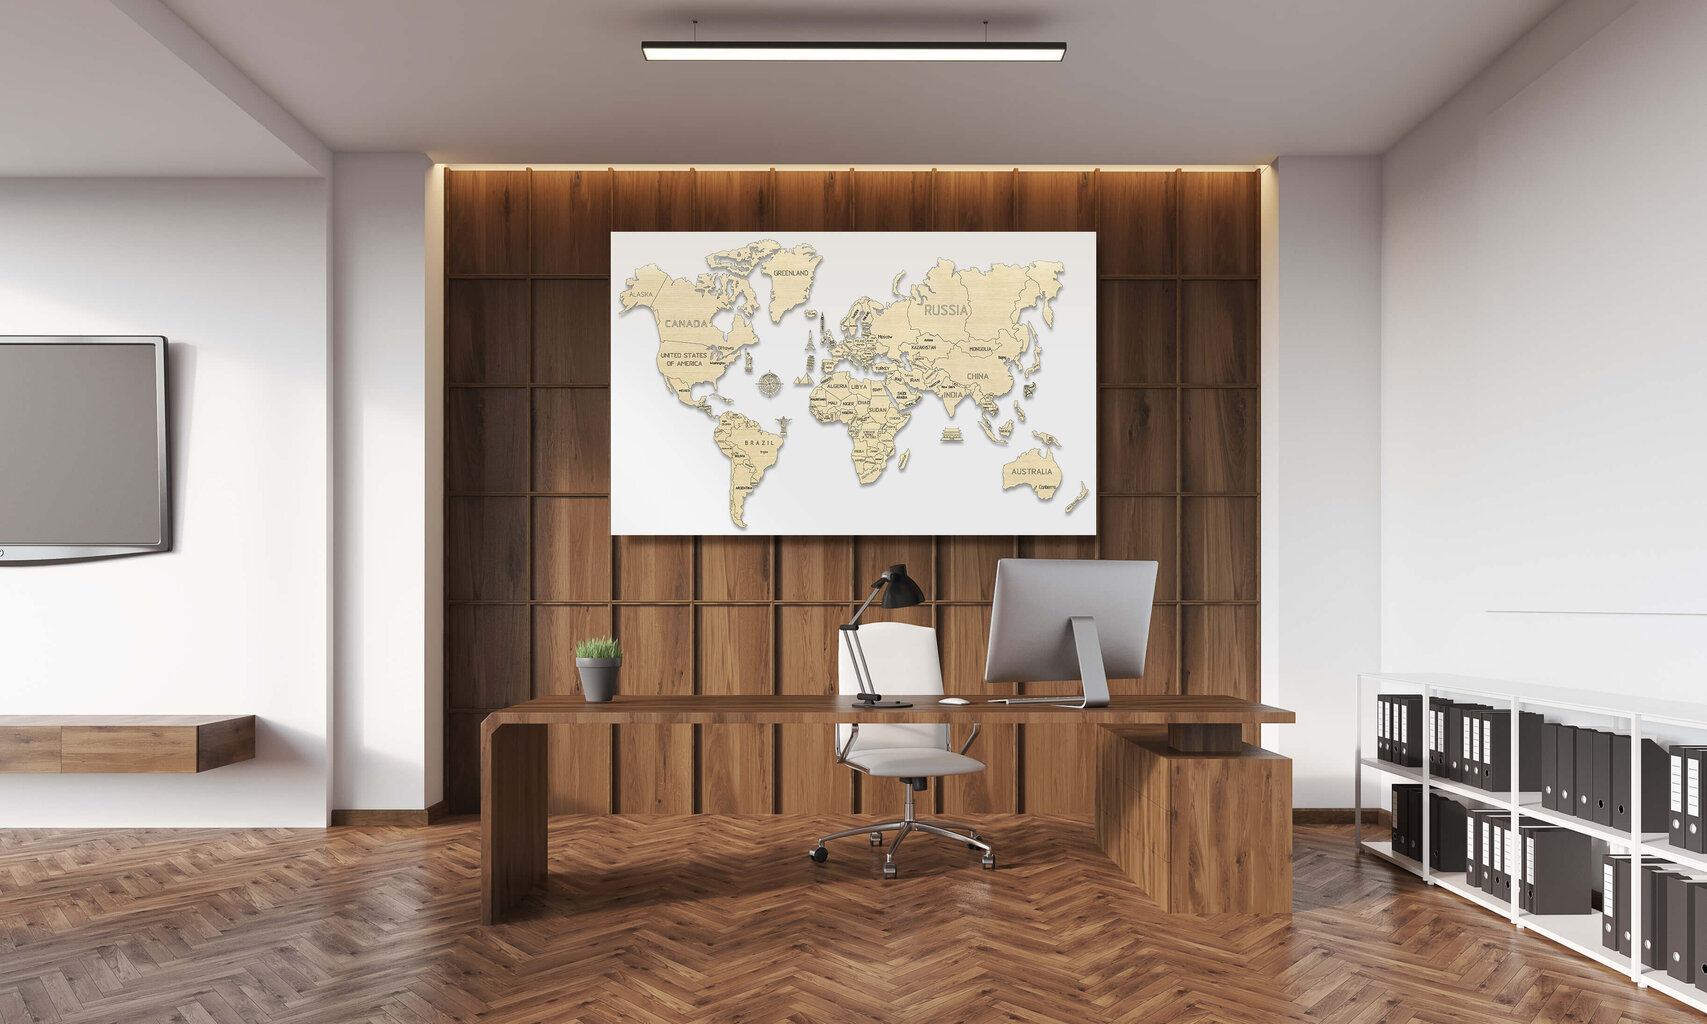 Medinis Wooden city pasaulio žemėlapis, L dydis kaina ir informacija | Žemėlapiai | pigu.lt